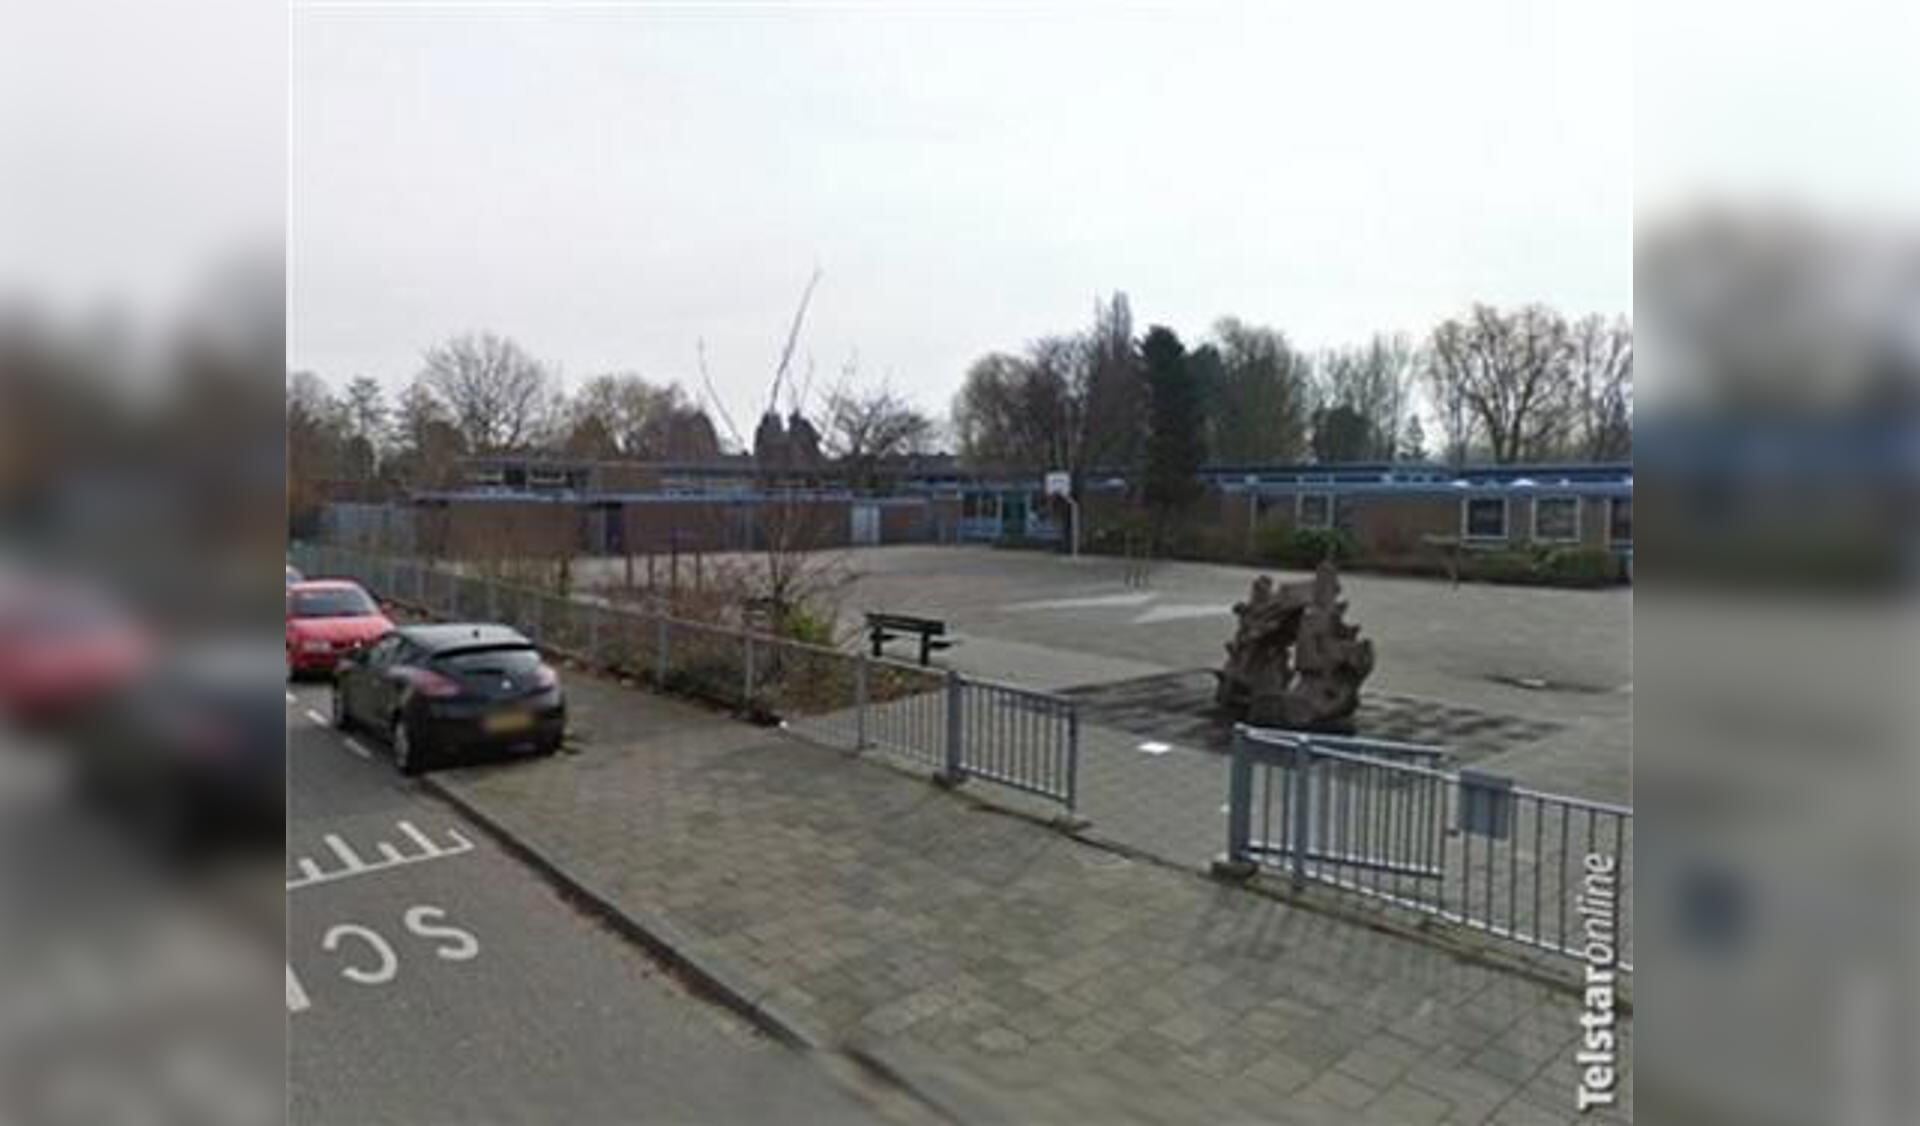 De school ligt aan de Groen van Prinstererlaan.